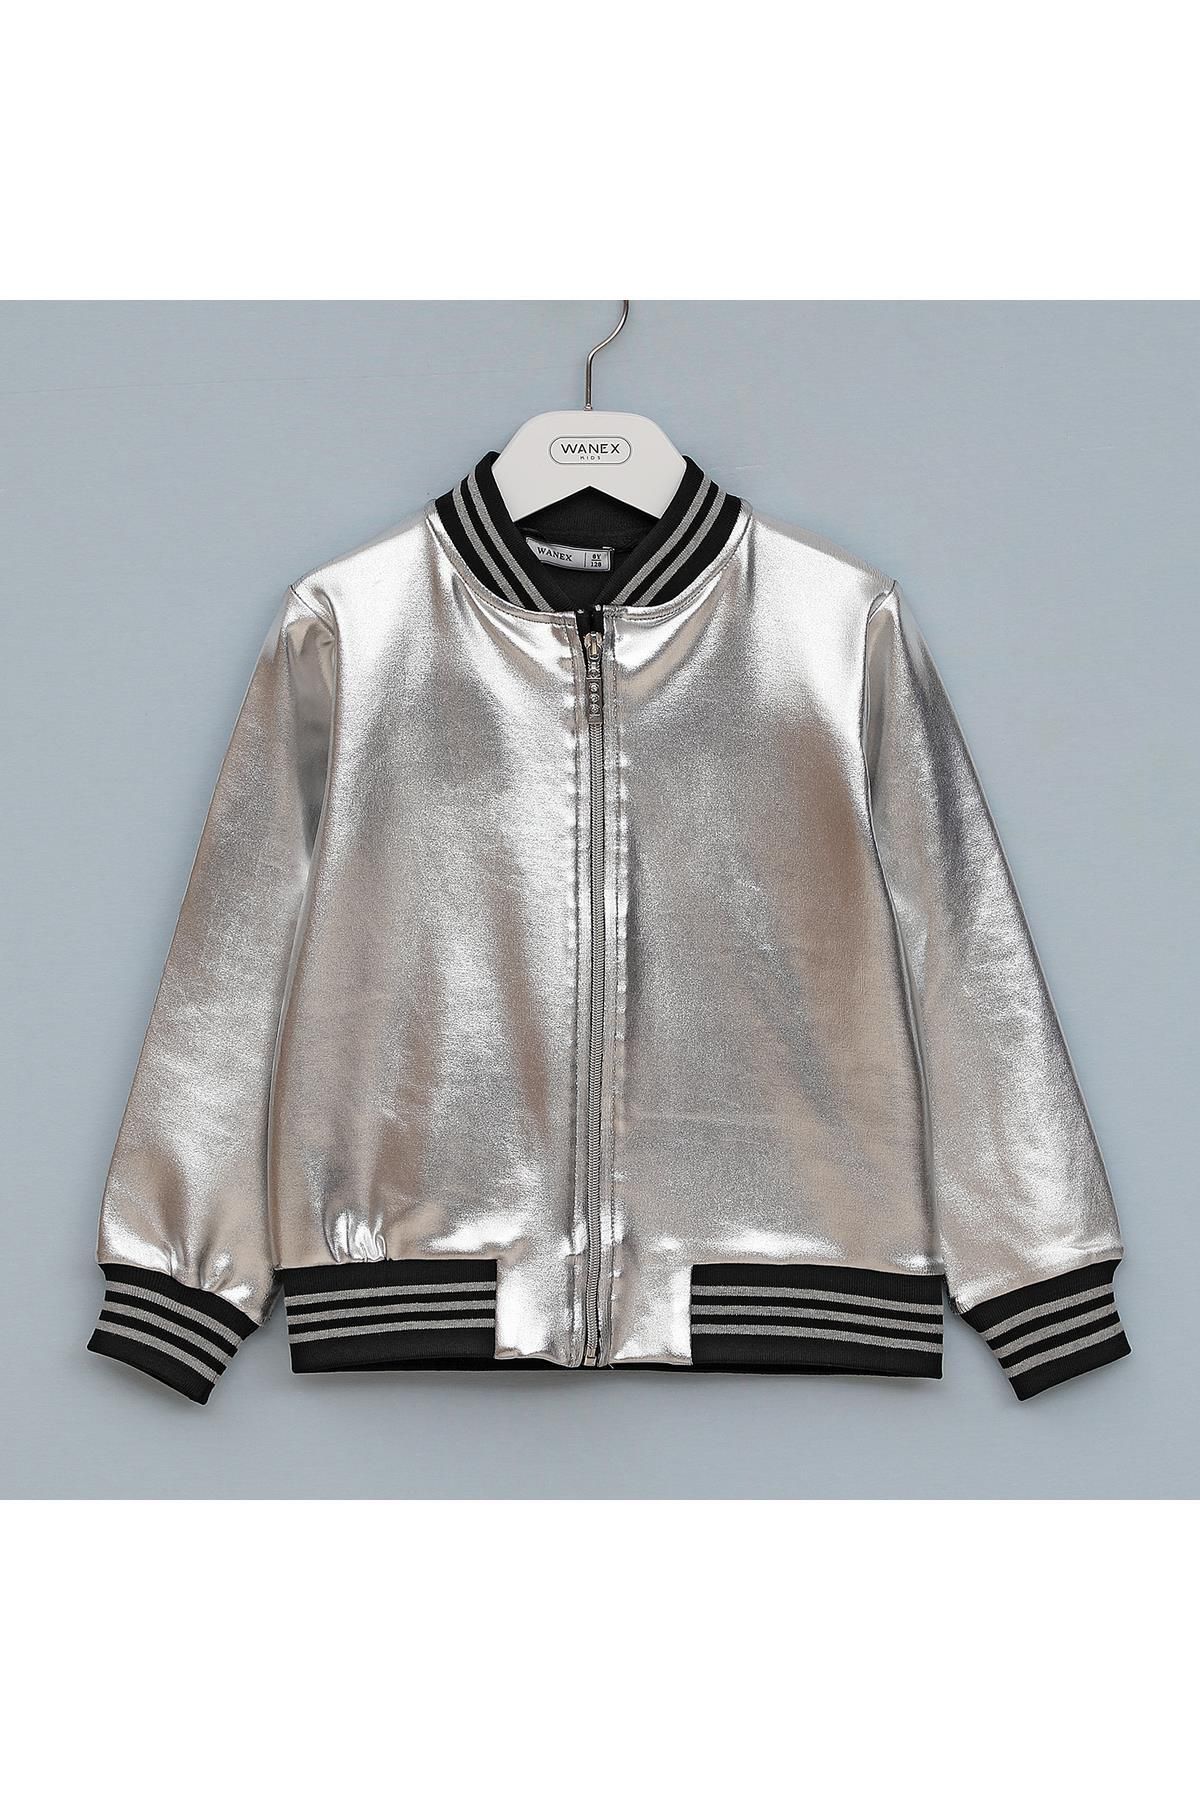 WANEX Kız Çocuk Fermuarlı Premium Gümüş Ceket - 01939 - Gümüş